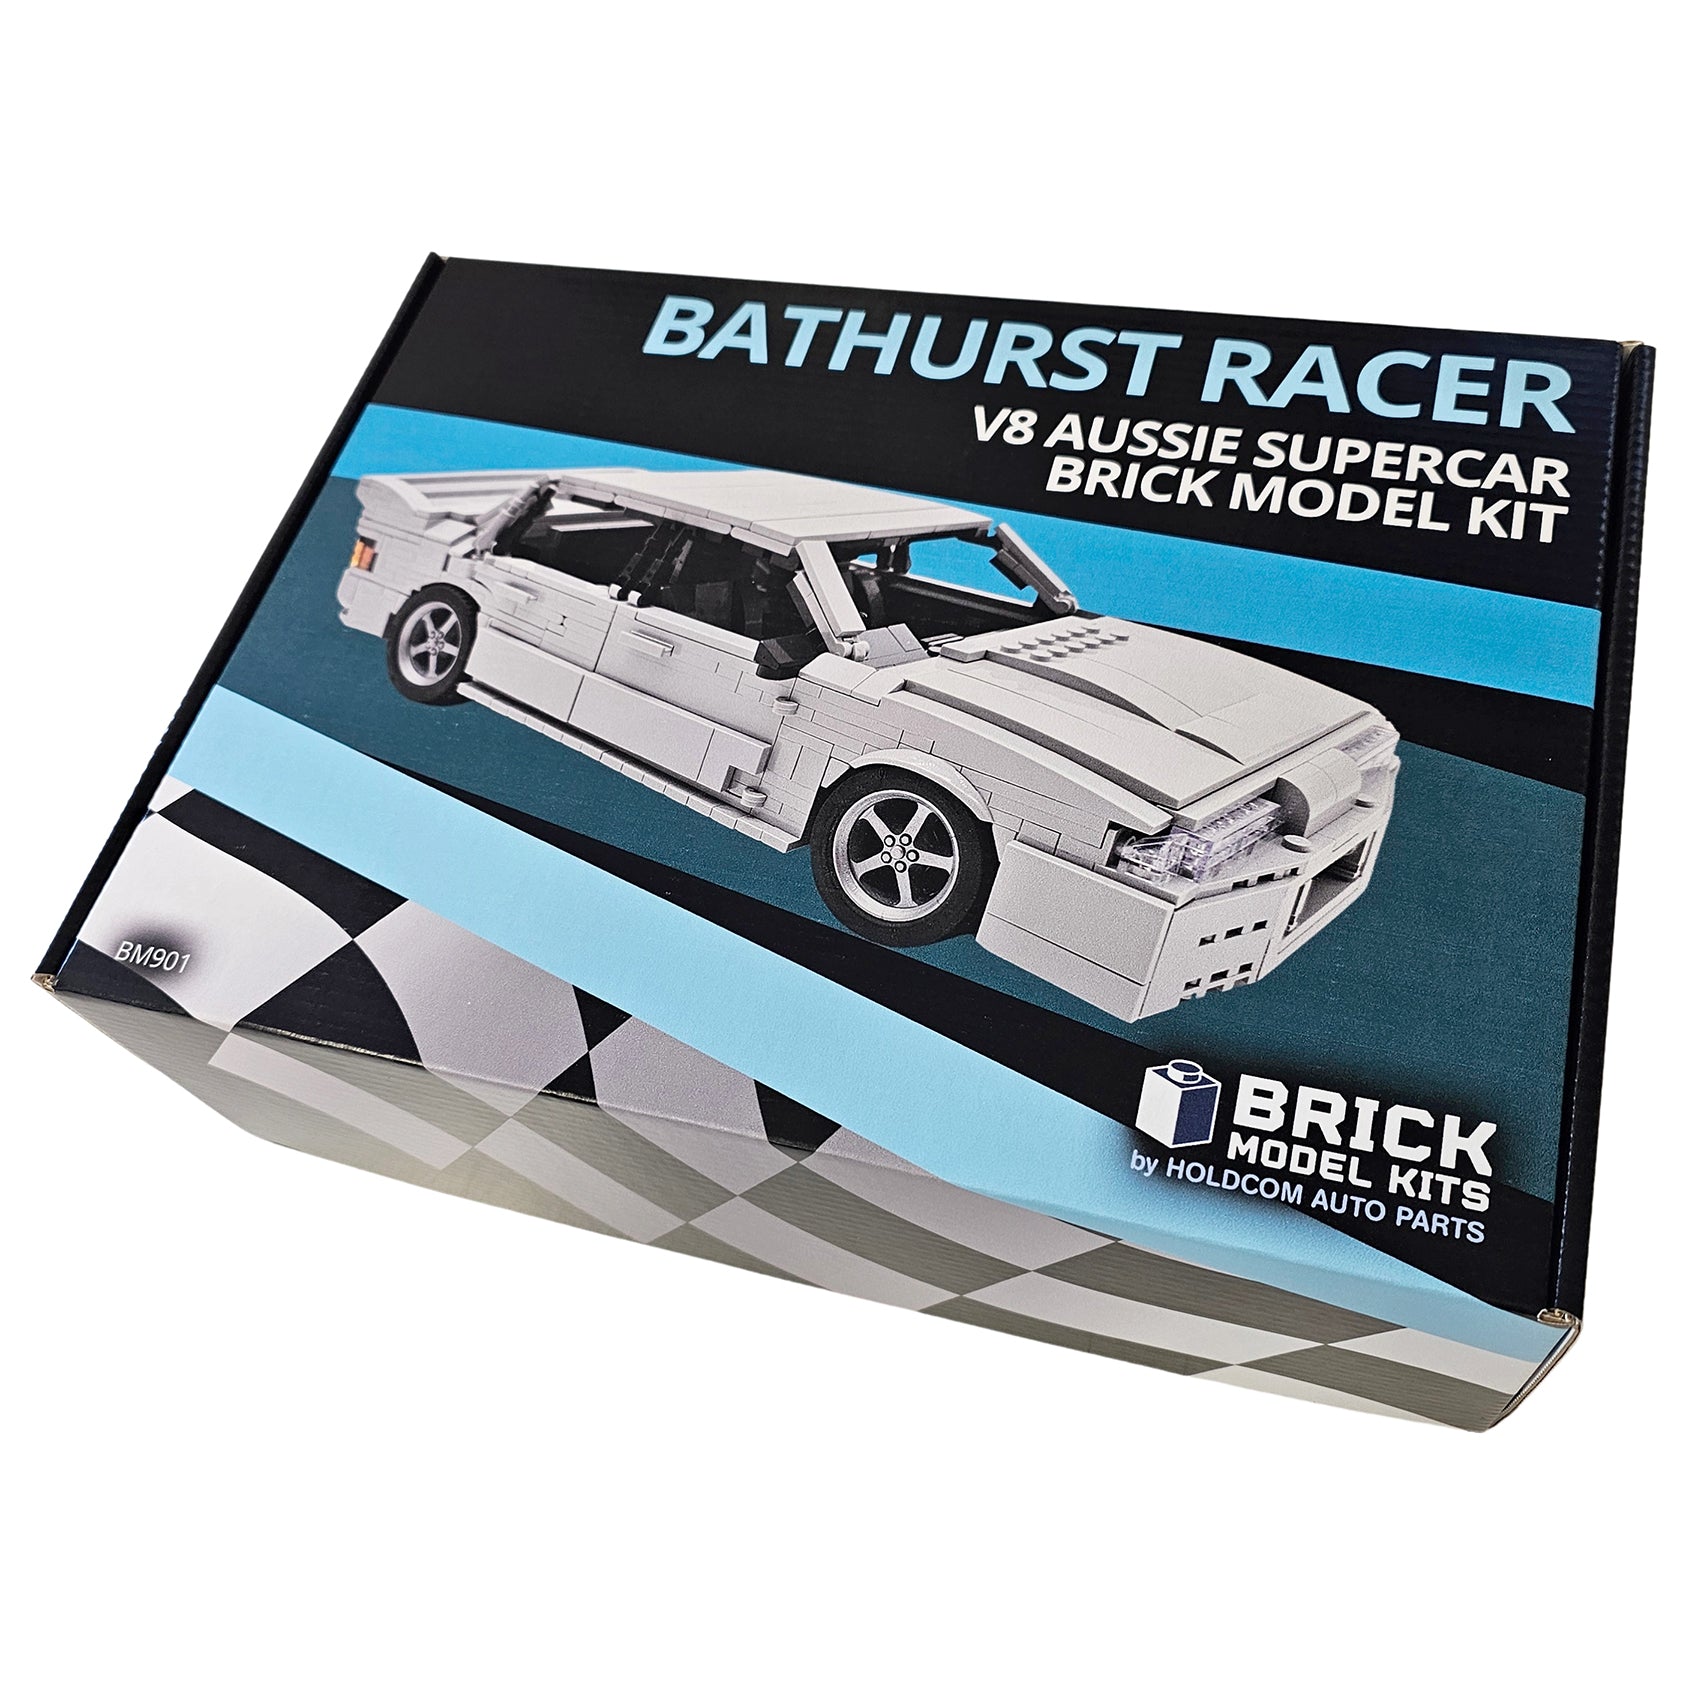 "Bathurst Racer" V8 Aussie Supercar Brick Model Kit